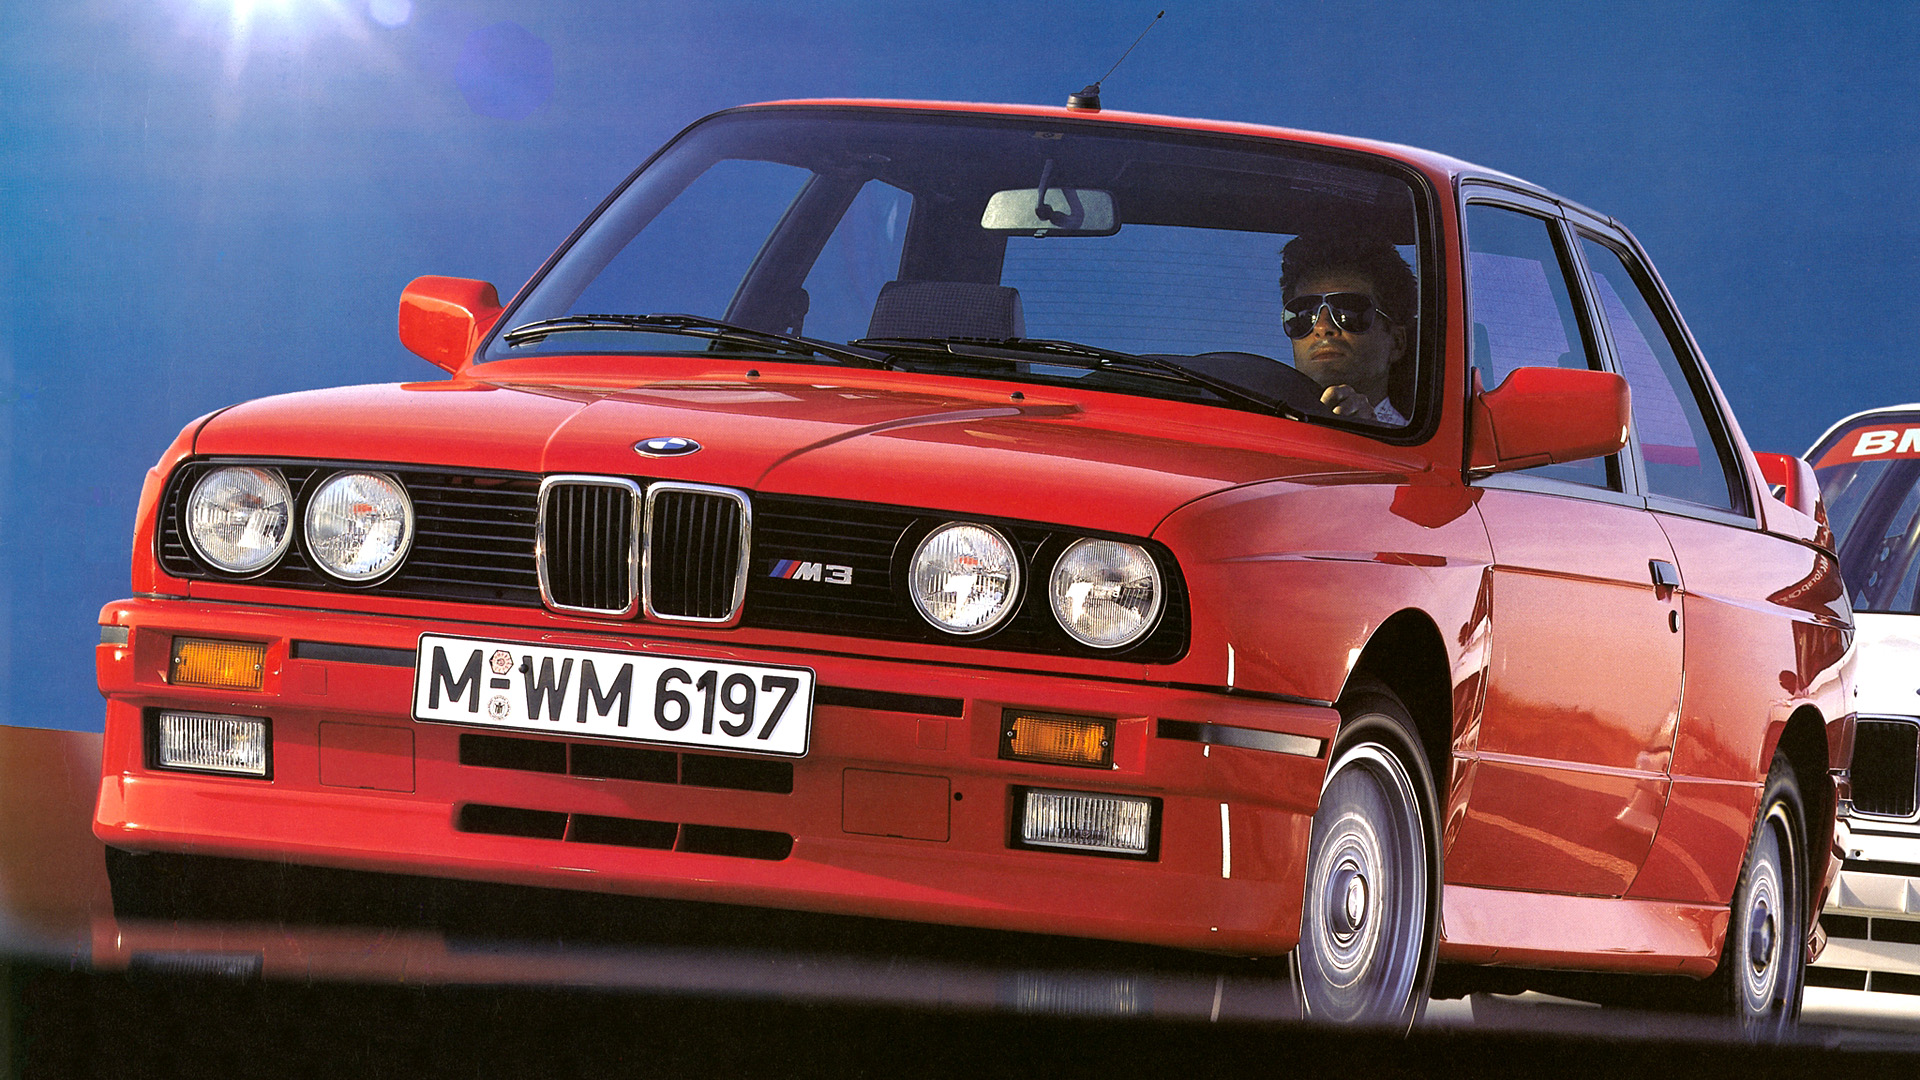  1987 BMW E30 M3 Wallpaper.